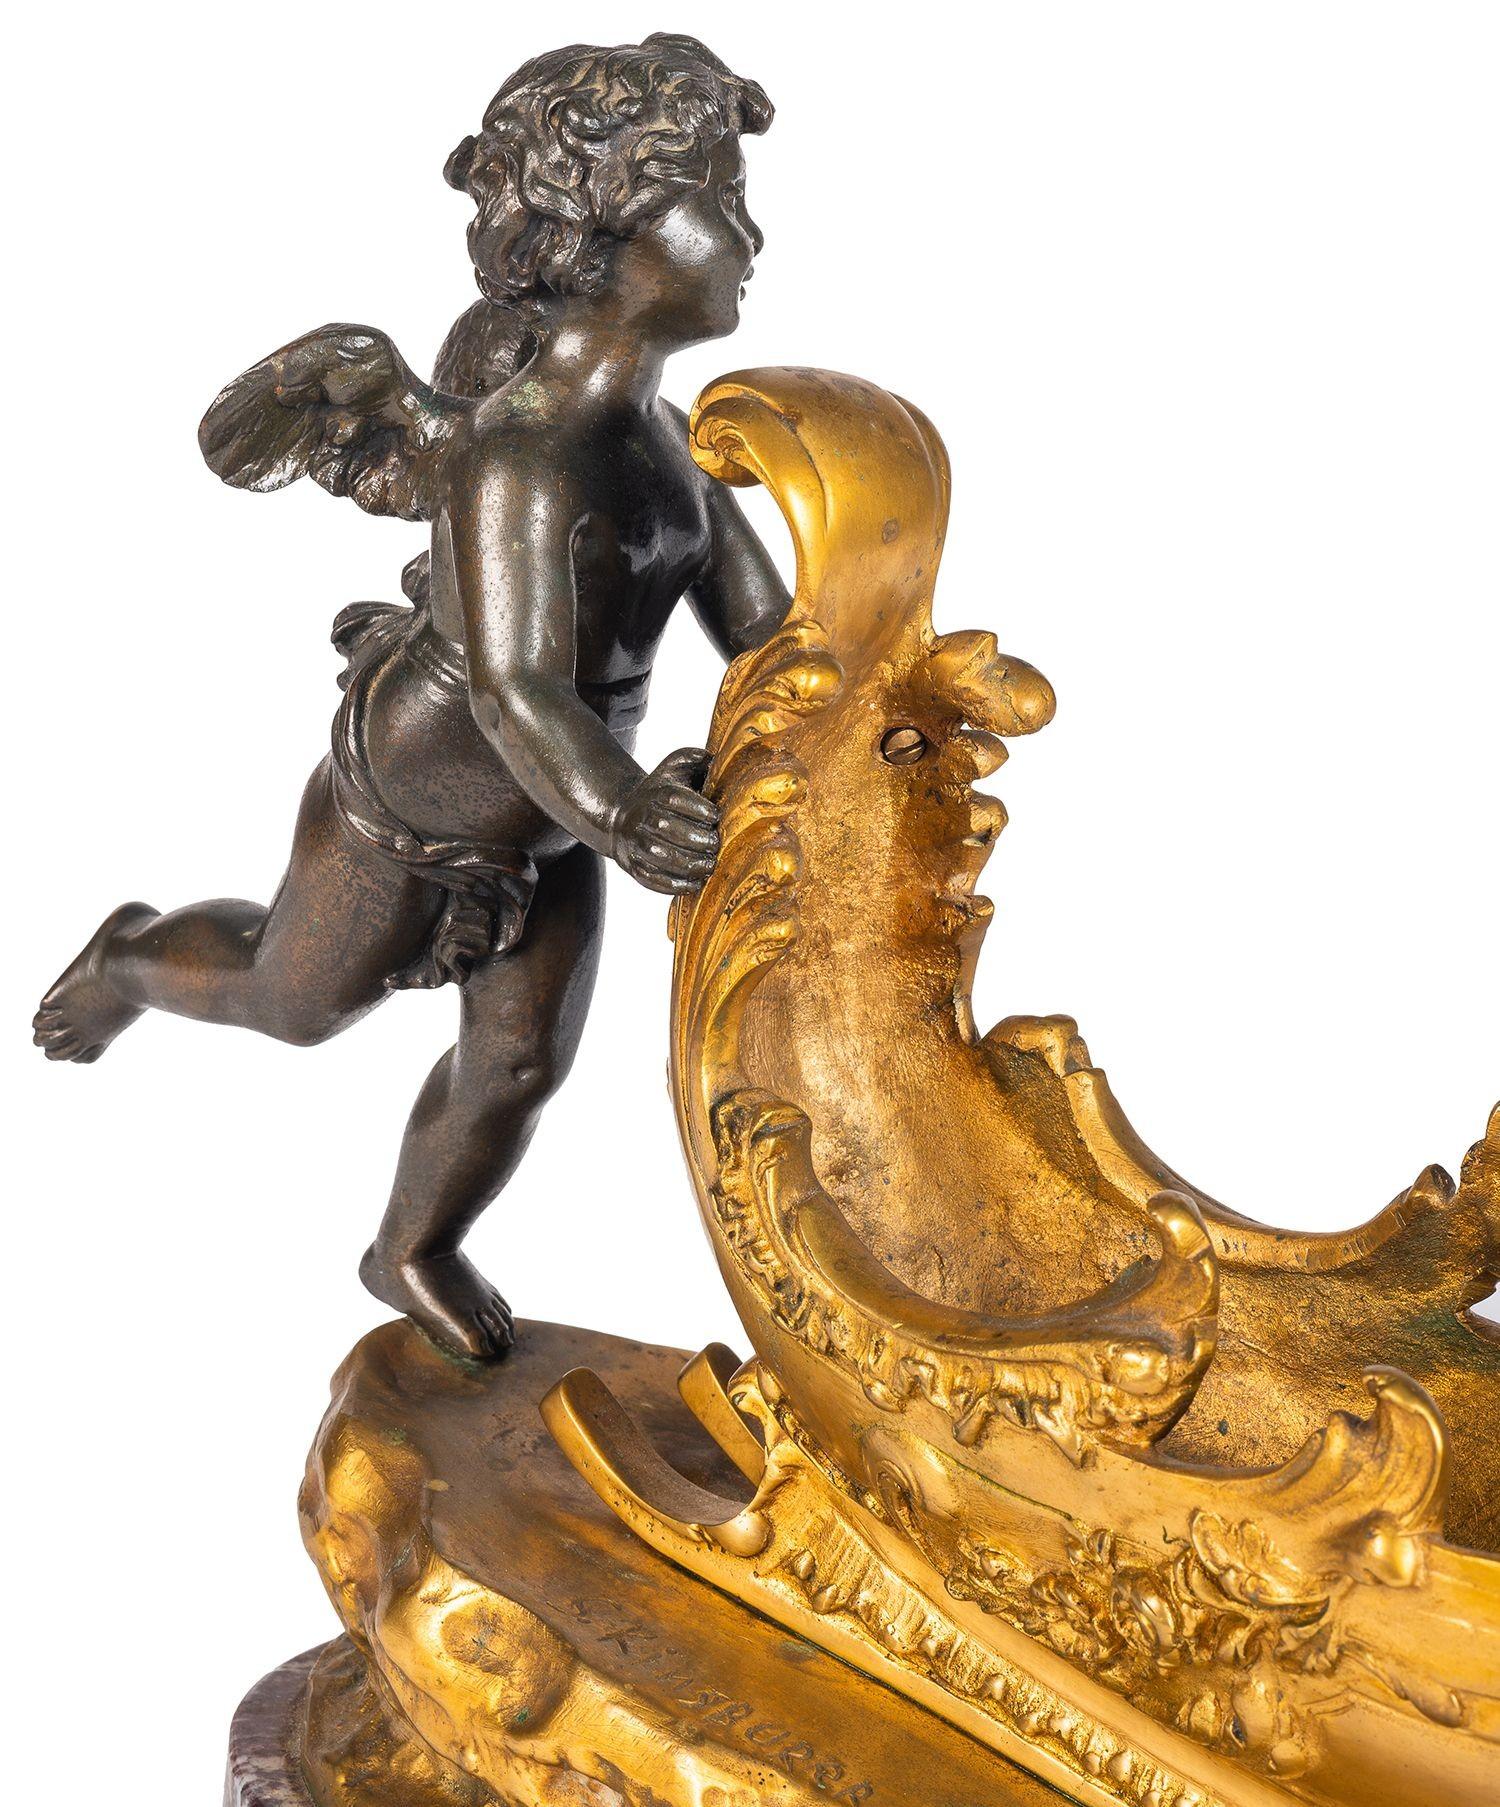 Ein bezaubernder Cherub aus patinierter Bronze und vergoldetem Ormolu aus dem 19. Jahrhundert, der einen Schlitten mit einem Schmetterling auf der Vorderseite schiebt, steht auf einem Sockel aus rotem Marmor.
Gezeichnet; S. Kinsburer.

Los 74